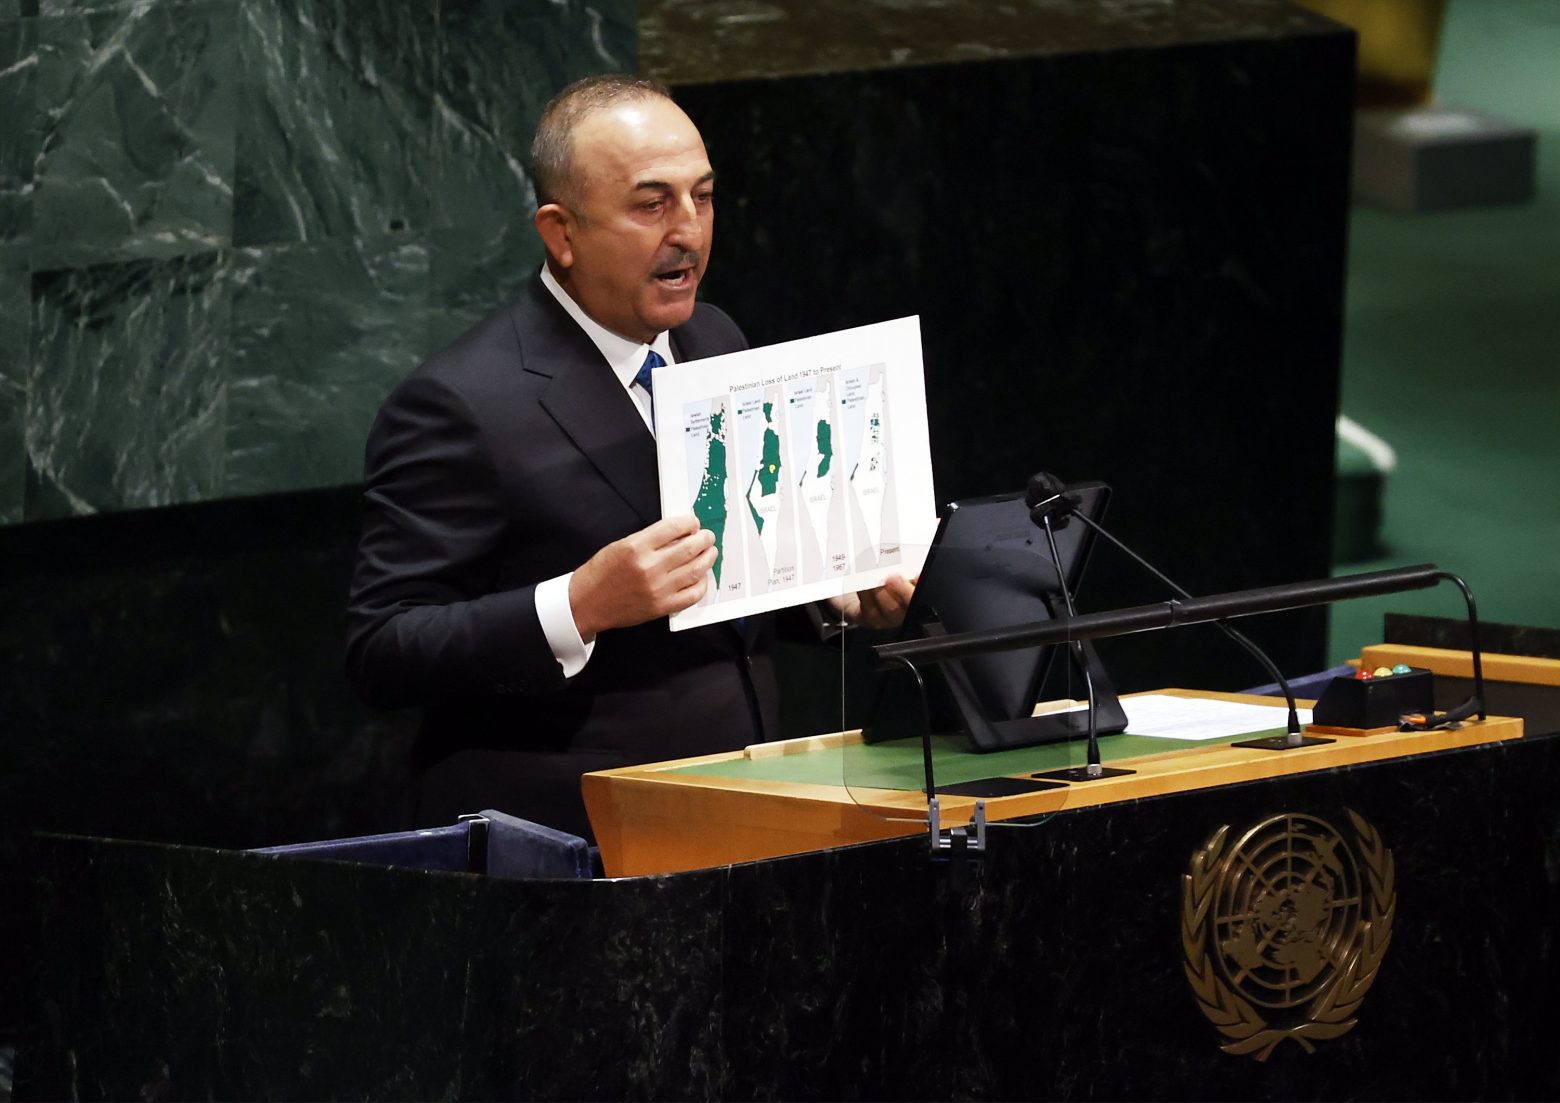 Τουρκία: Σόου Τσαβούσογλου στον ΟΗΕ - Έδειχνε χάρτες και κατηγορούσε το Ισραήλ